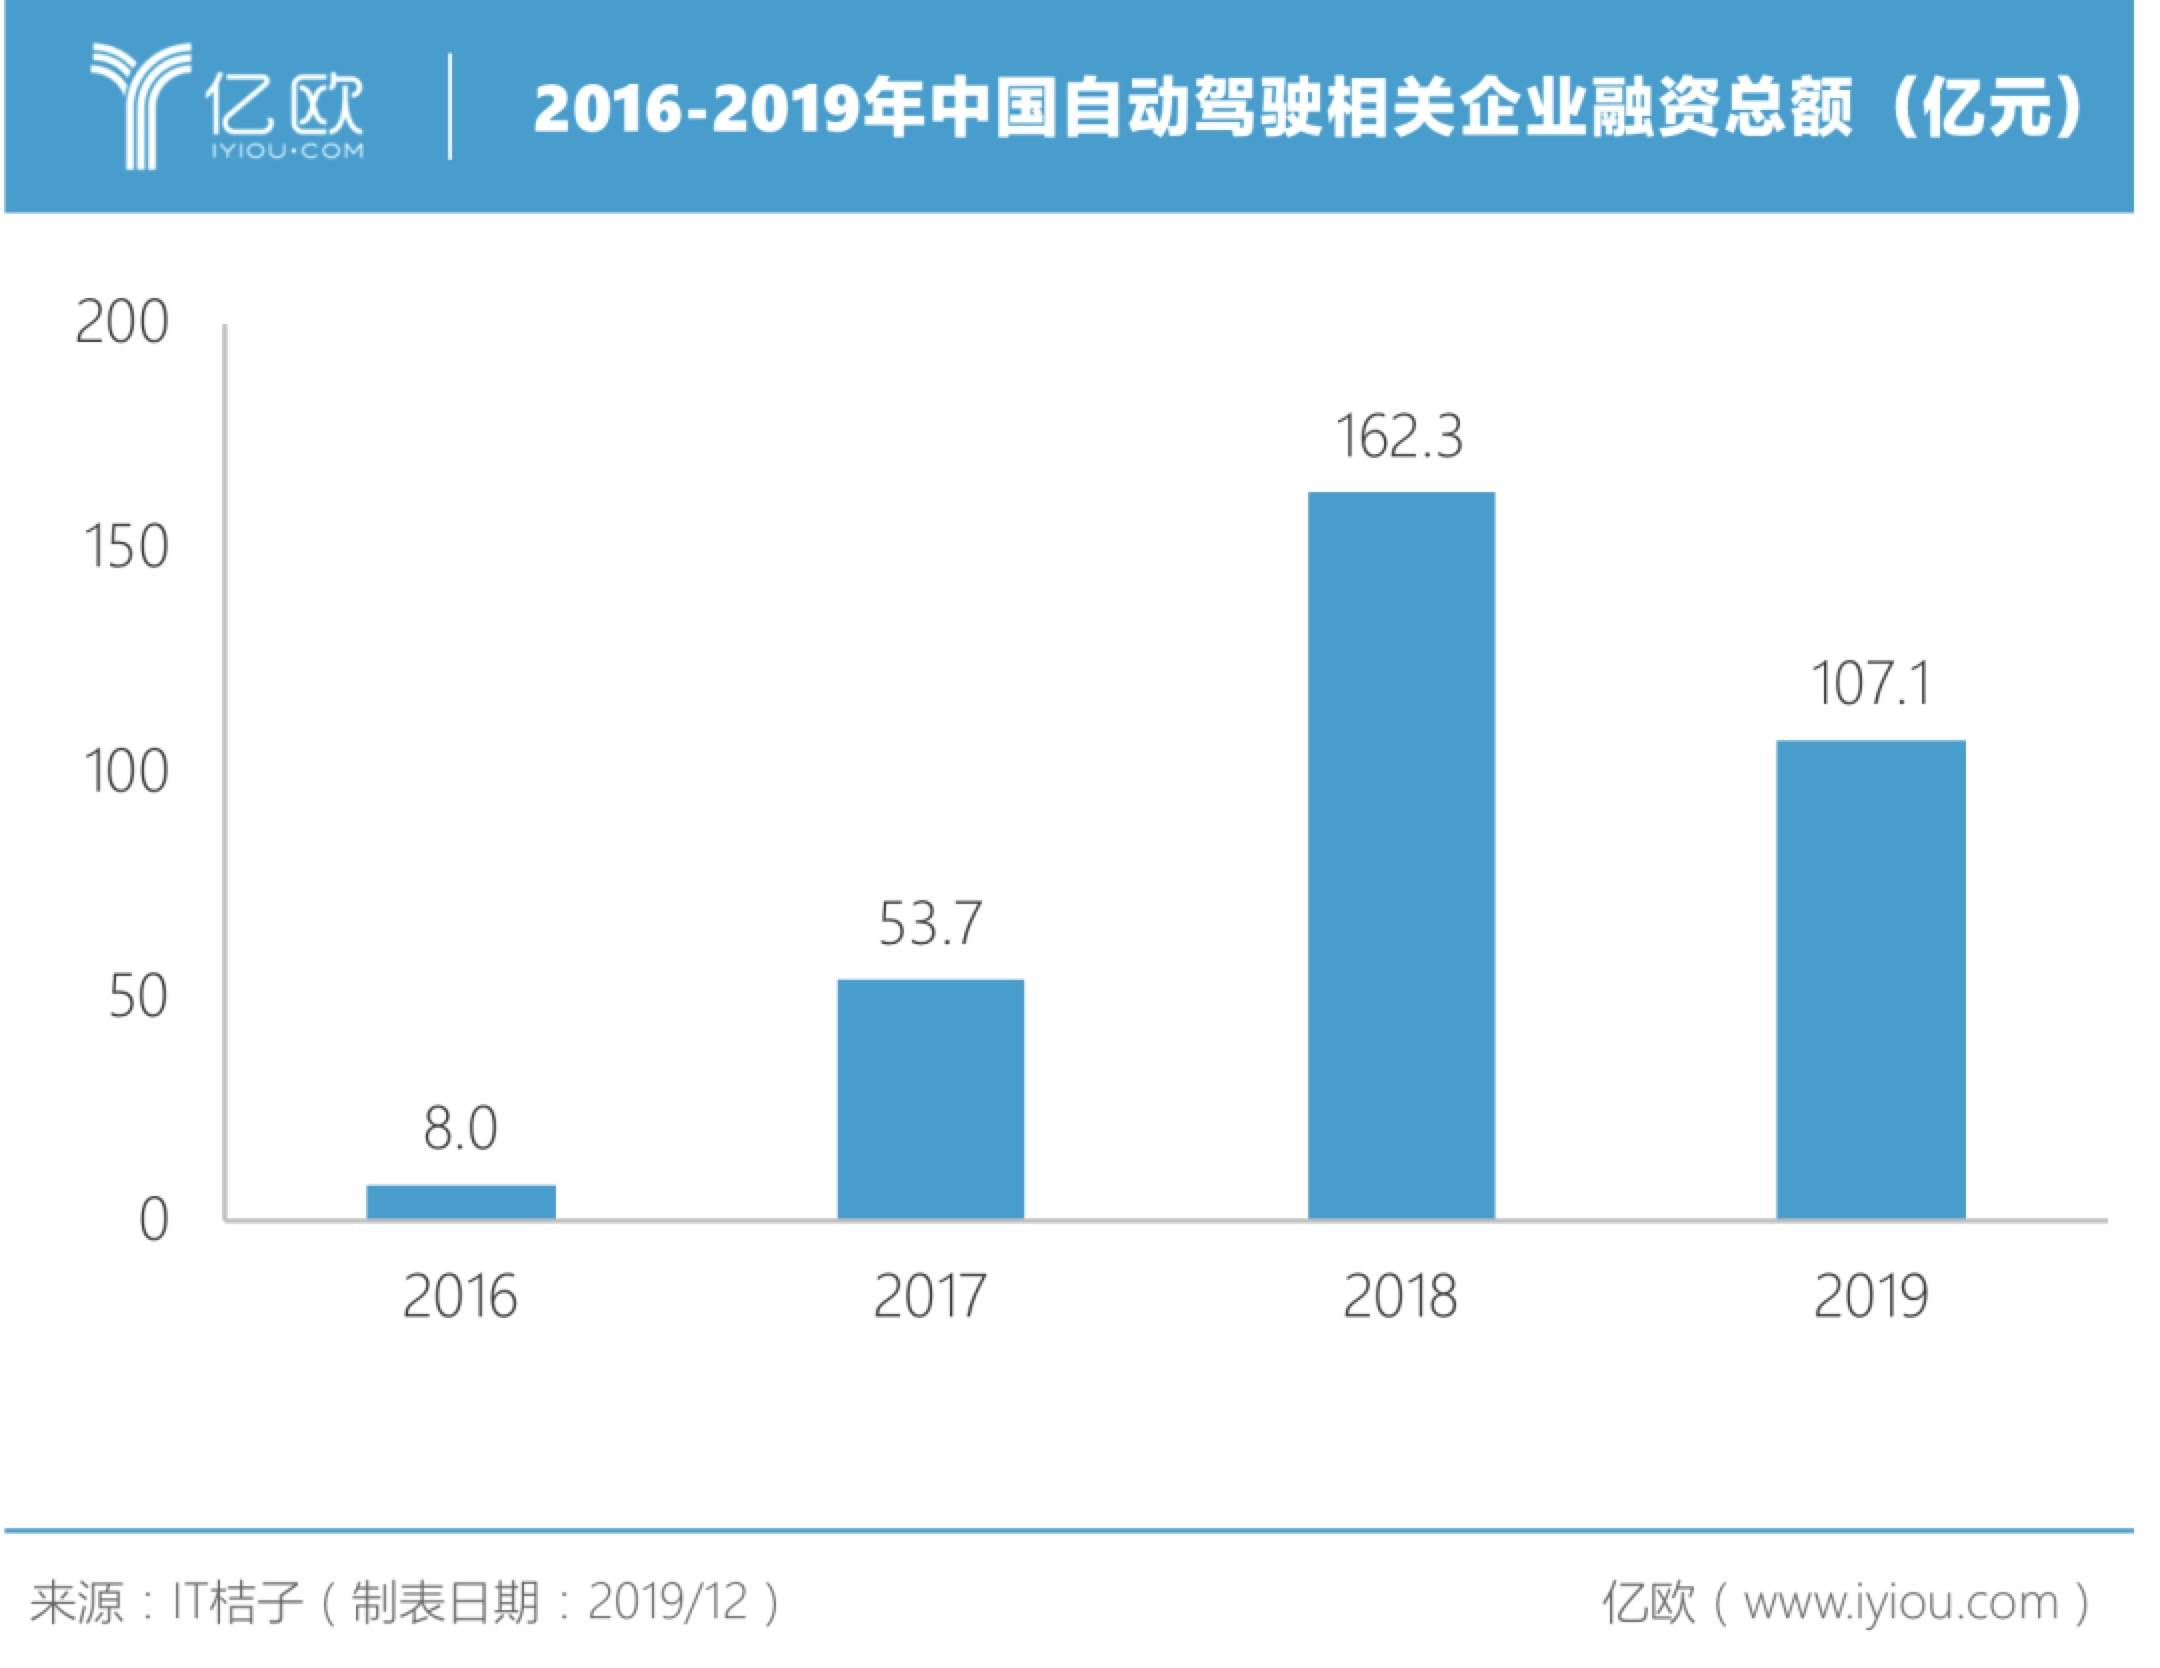 2016-2019年中国自动驾驶相关企业融资总额